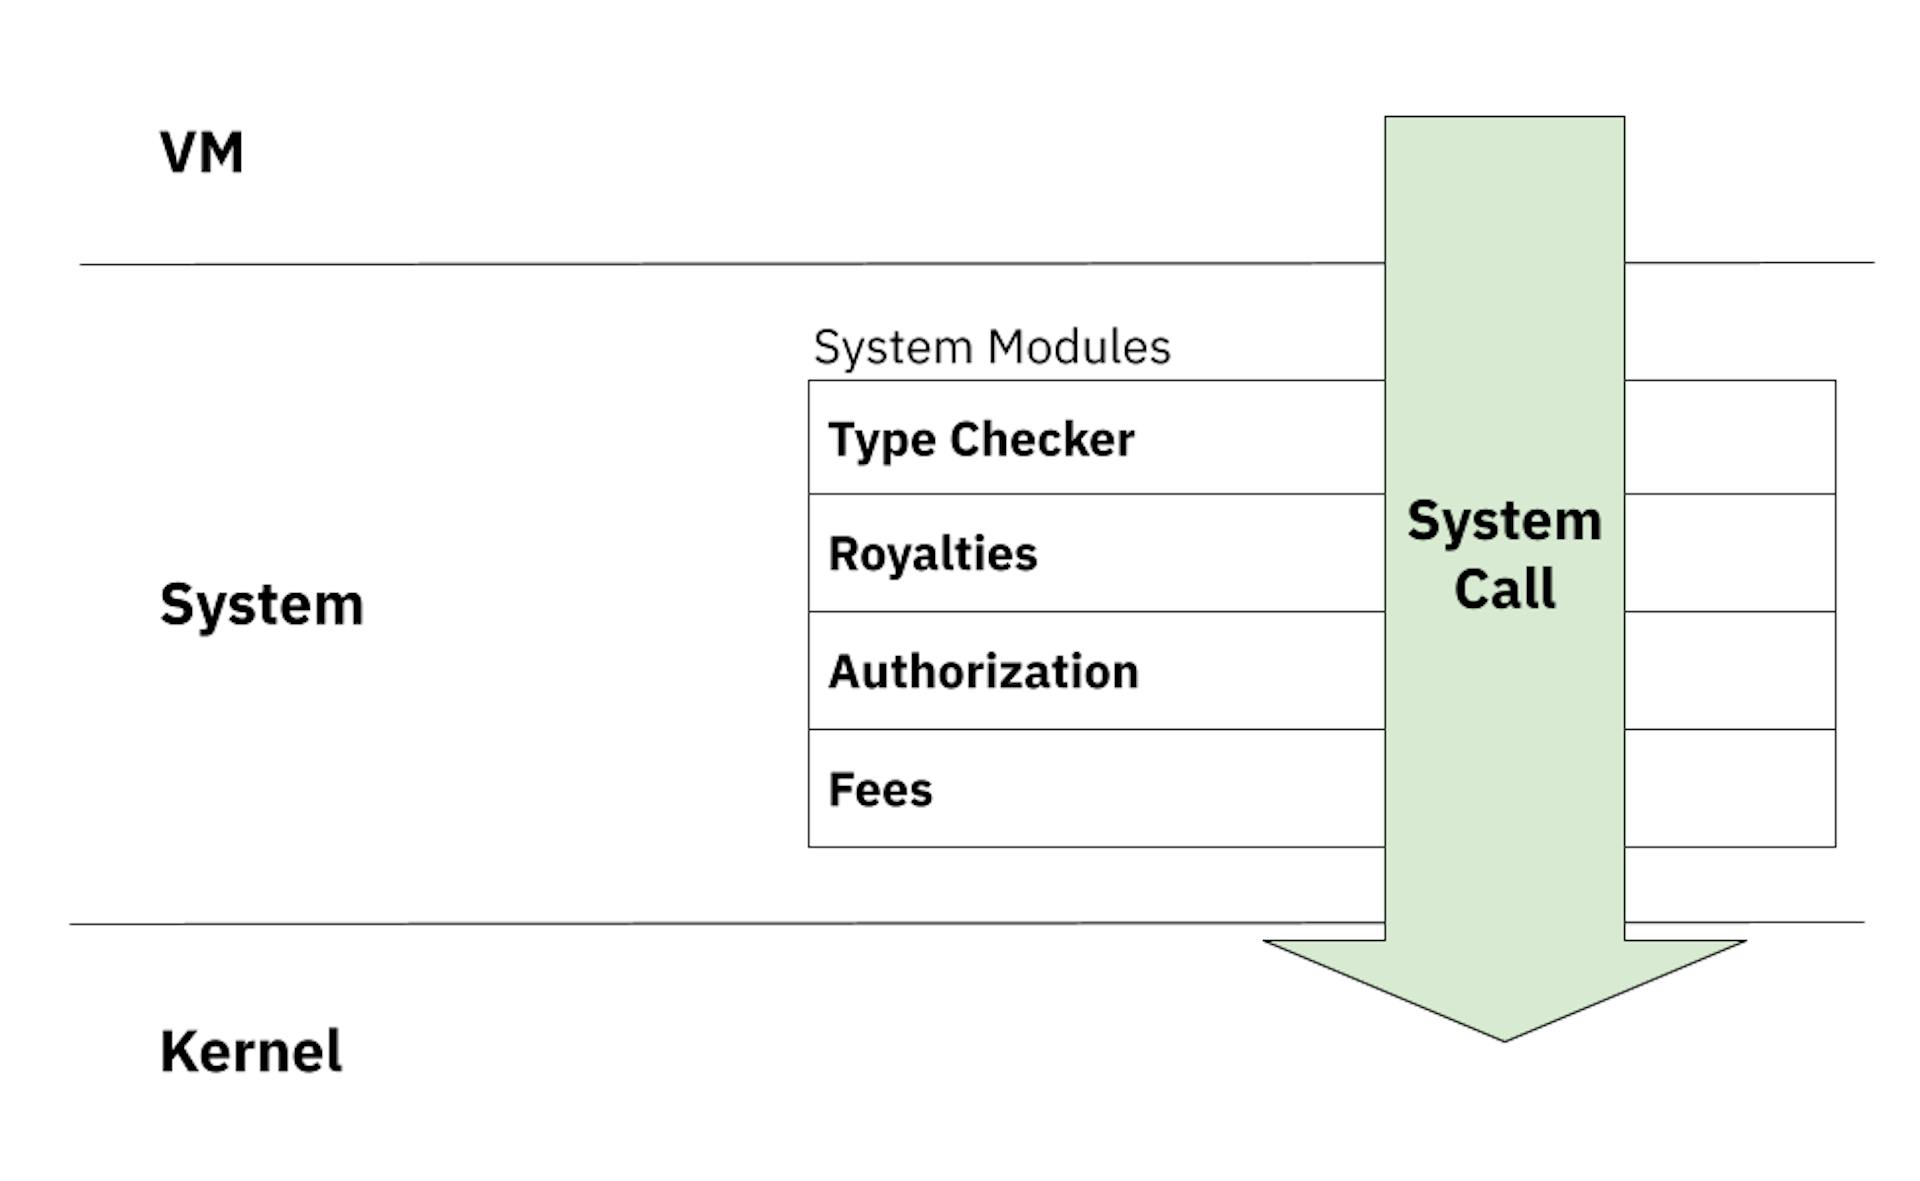 Una llamada al sistema debe pasar por los filtros de varios módulos del sistema antes de pasar al kernel.